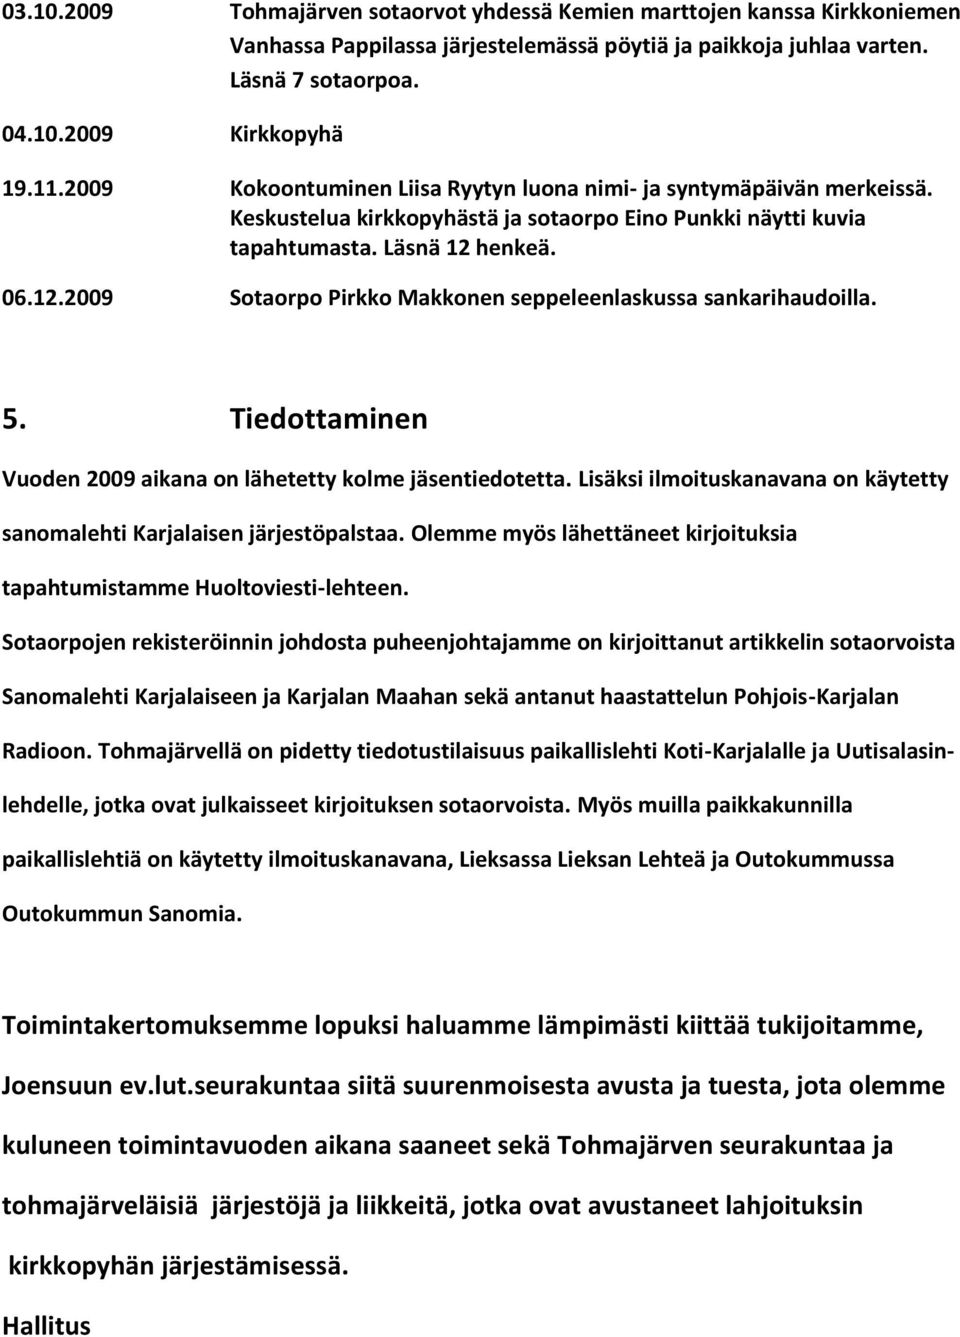 henkeä. 06.12.2009 Sotaorpo Pirkko Makkonen seppeleenlaskussa sankarihaudoilla. 5. Tiedottaminen Vuoden 2009 aikana on lähetetty kolme jäsentiedotetta.